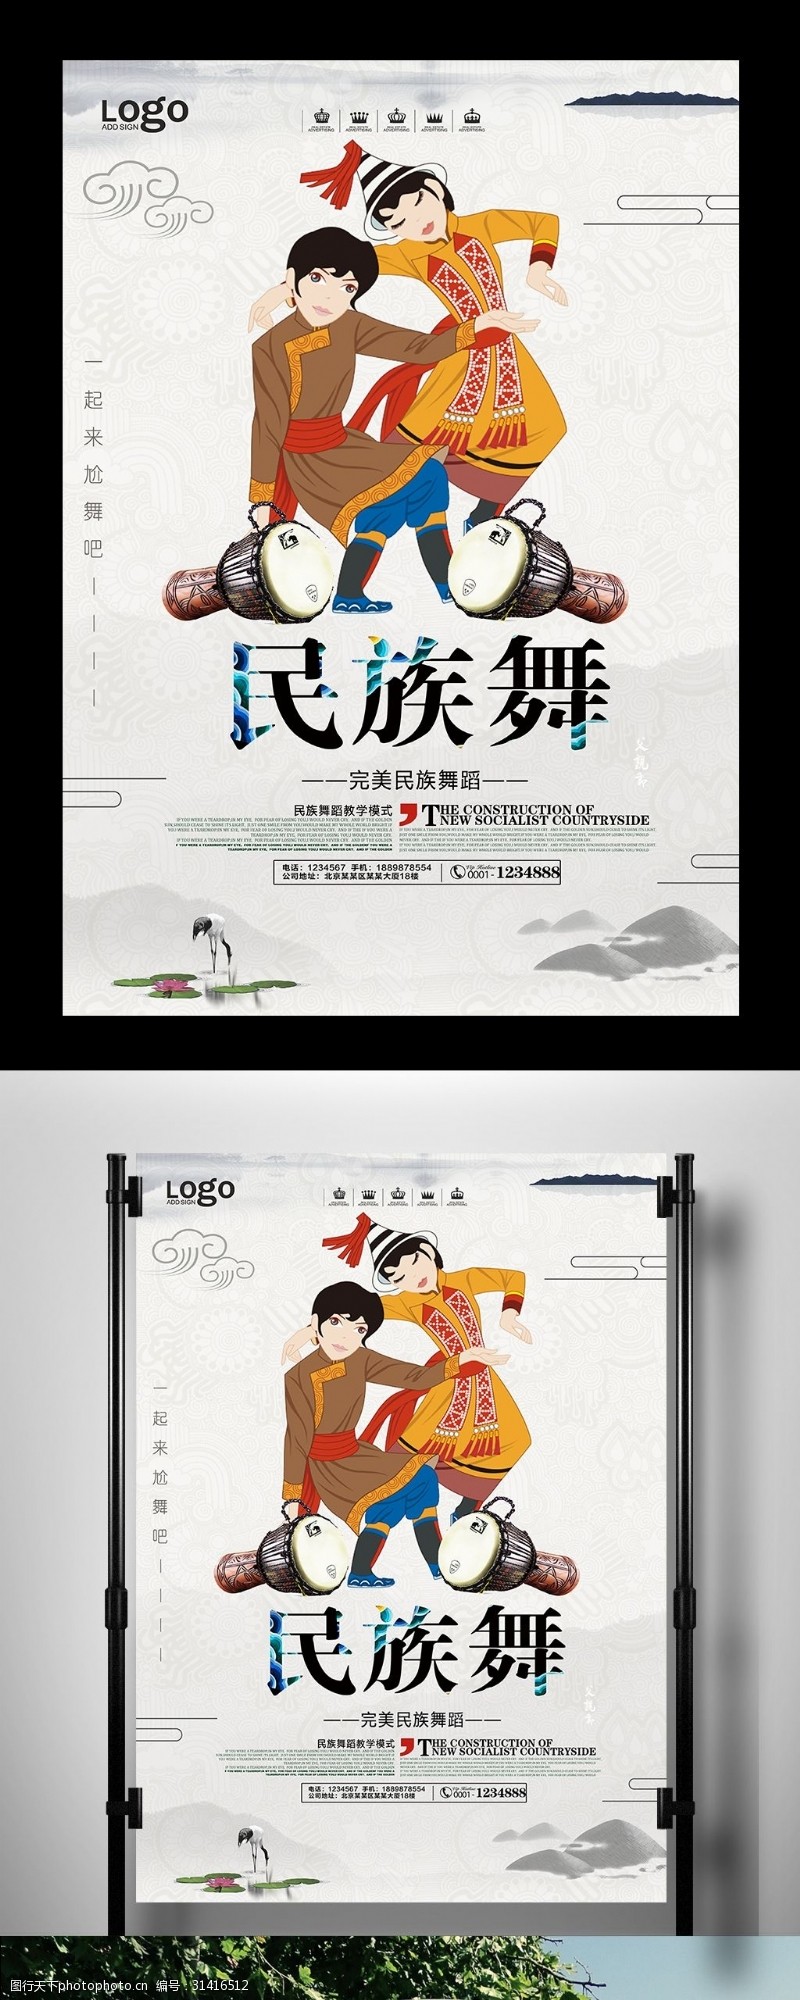 少儿舞蹈学习中国风民族舞蹈宣传海报